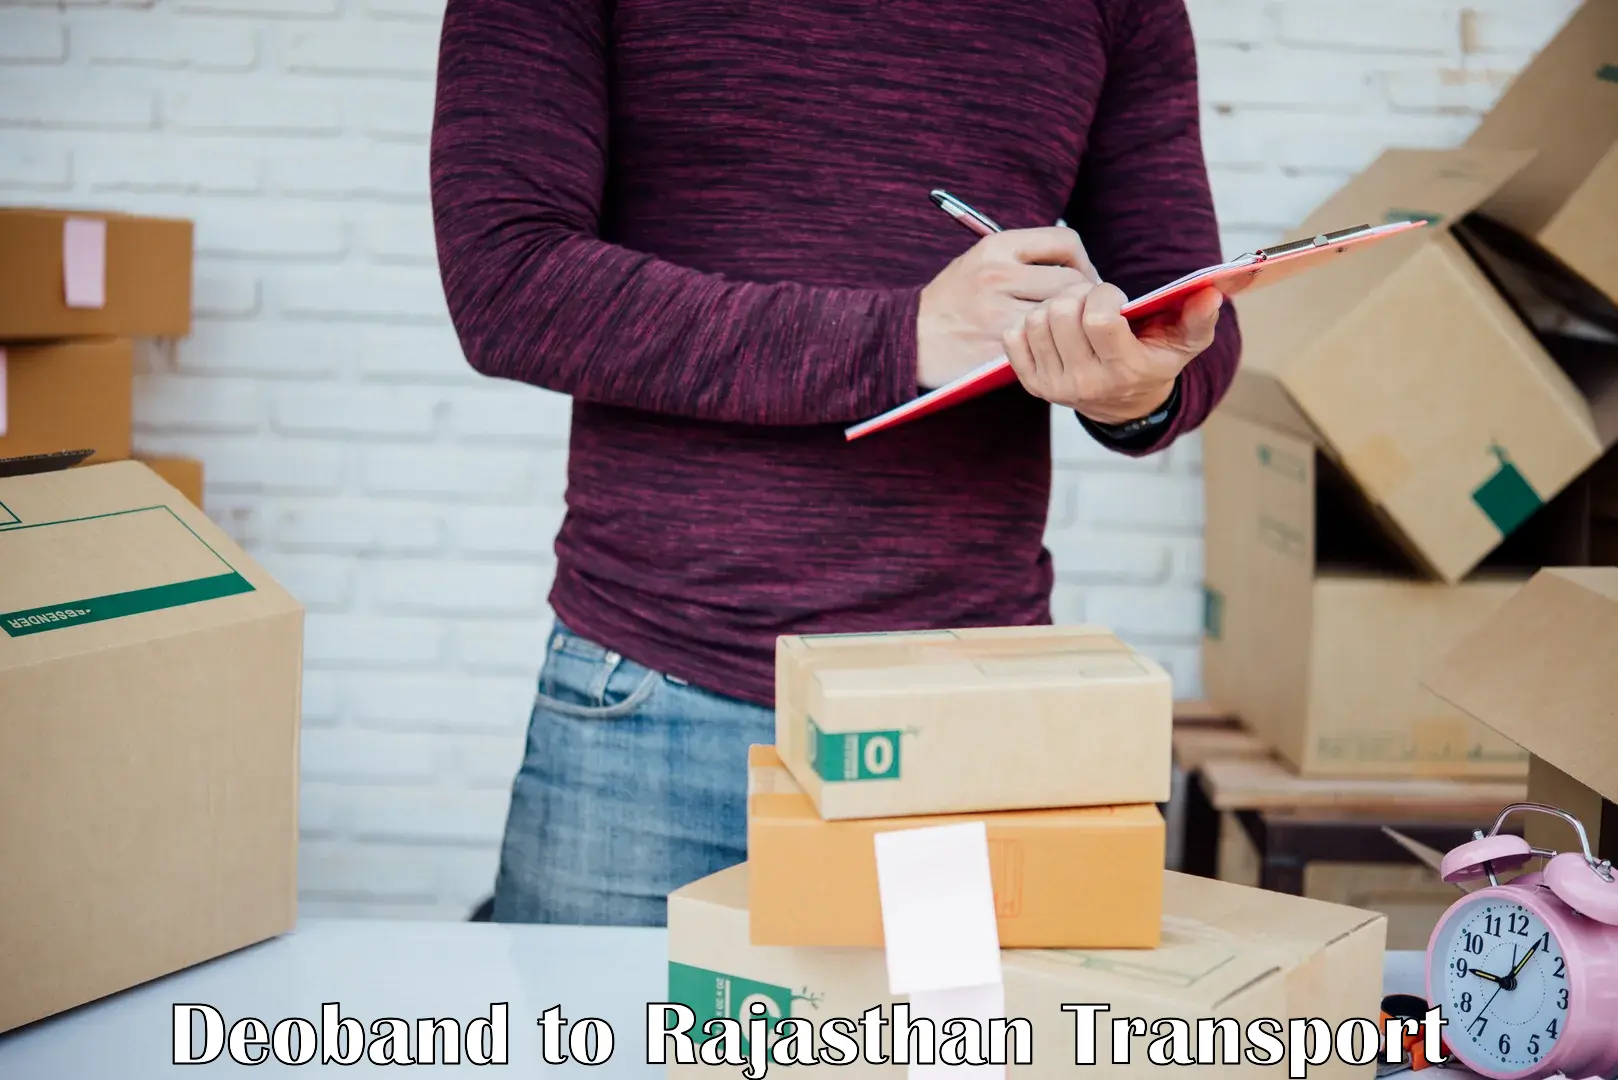 Furniture transport service Deoband to Banar